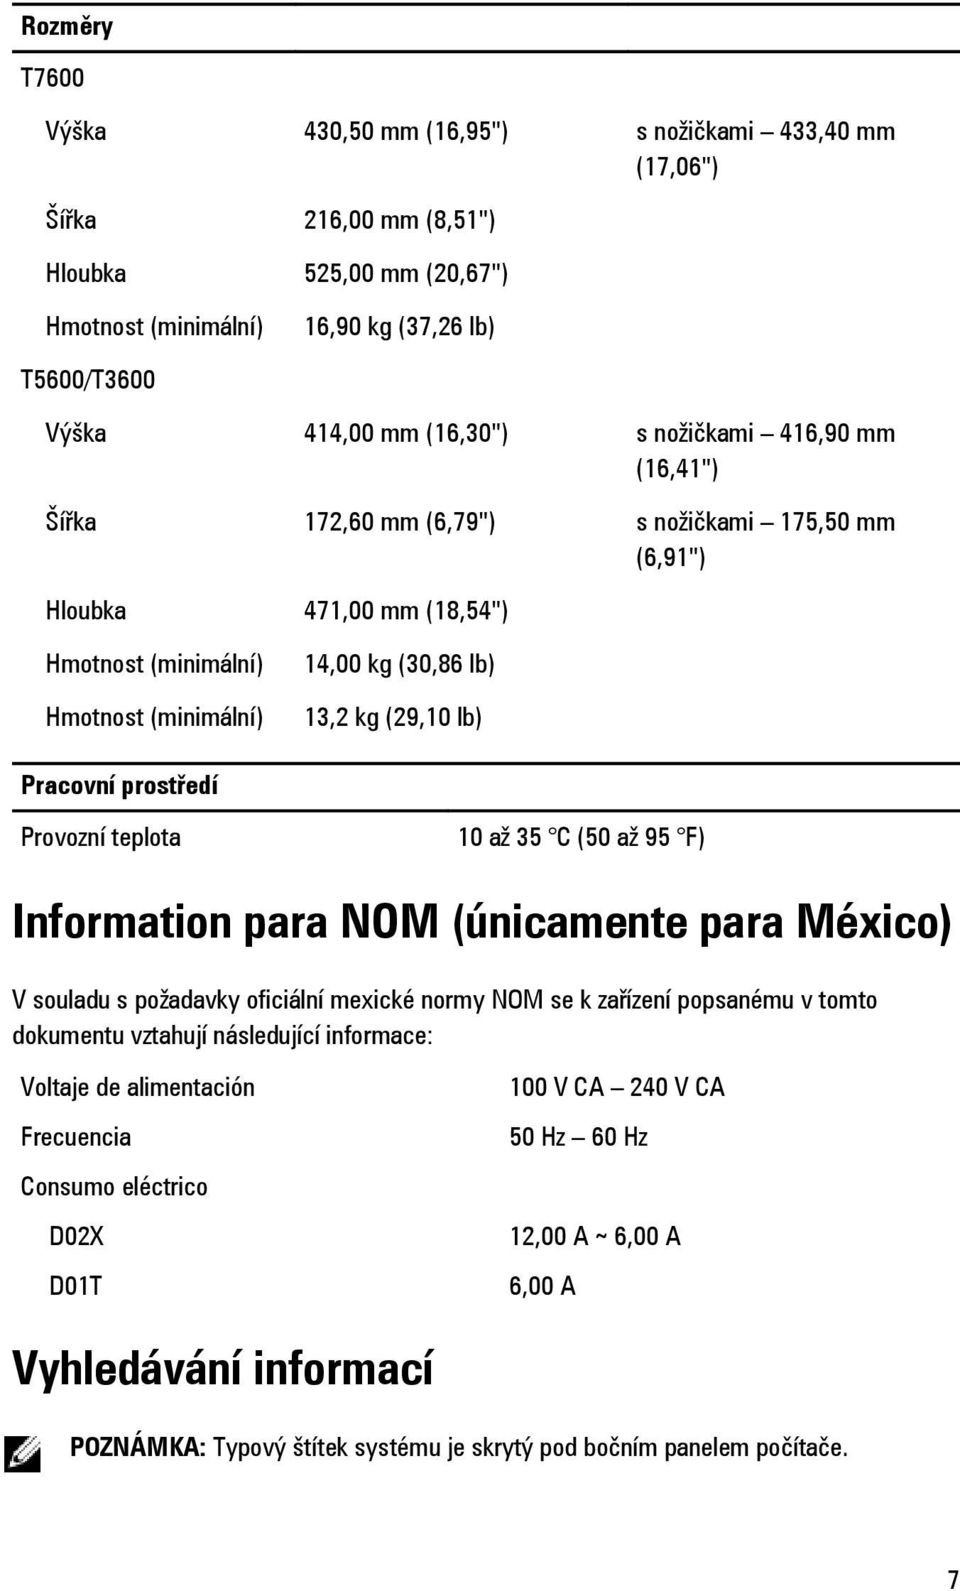 Pracovní prostředí Provozní teplota 10 až 35 C (50 až 95 F) Information para NOM (únicamente para México) V souladu s požadavky oficiální mexické normy NOM se k zařízení popsanému v tomto dokumentu